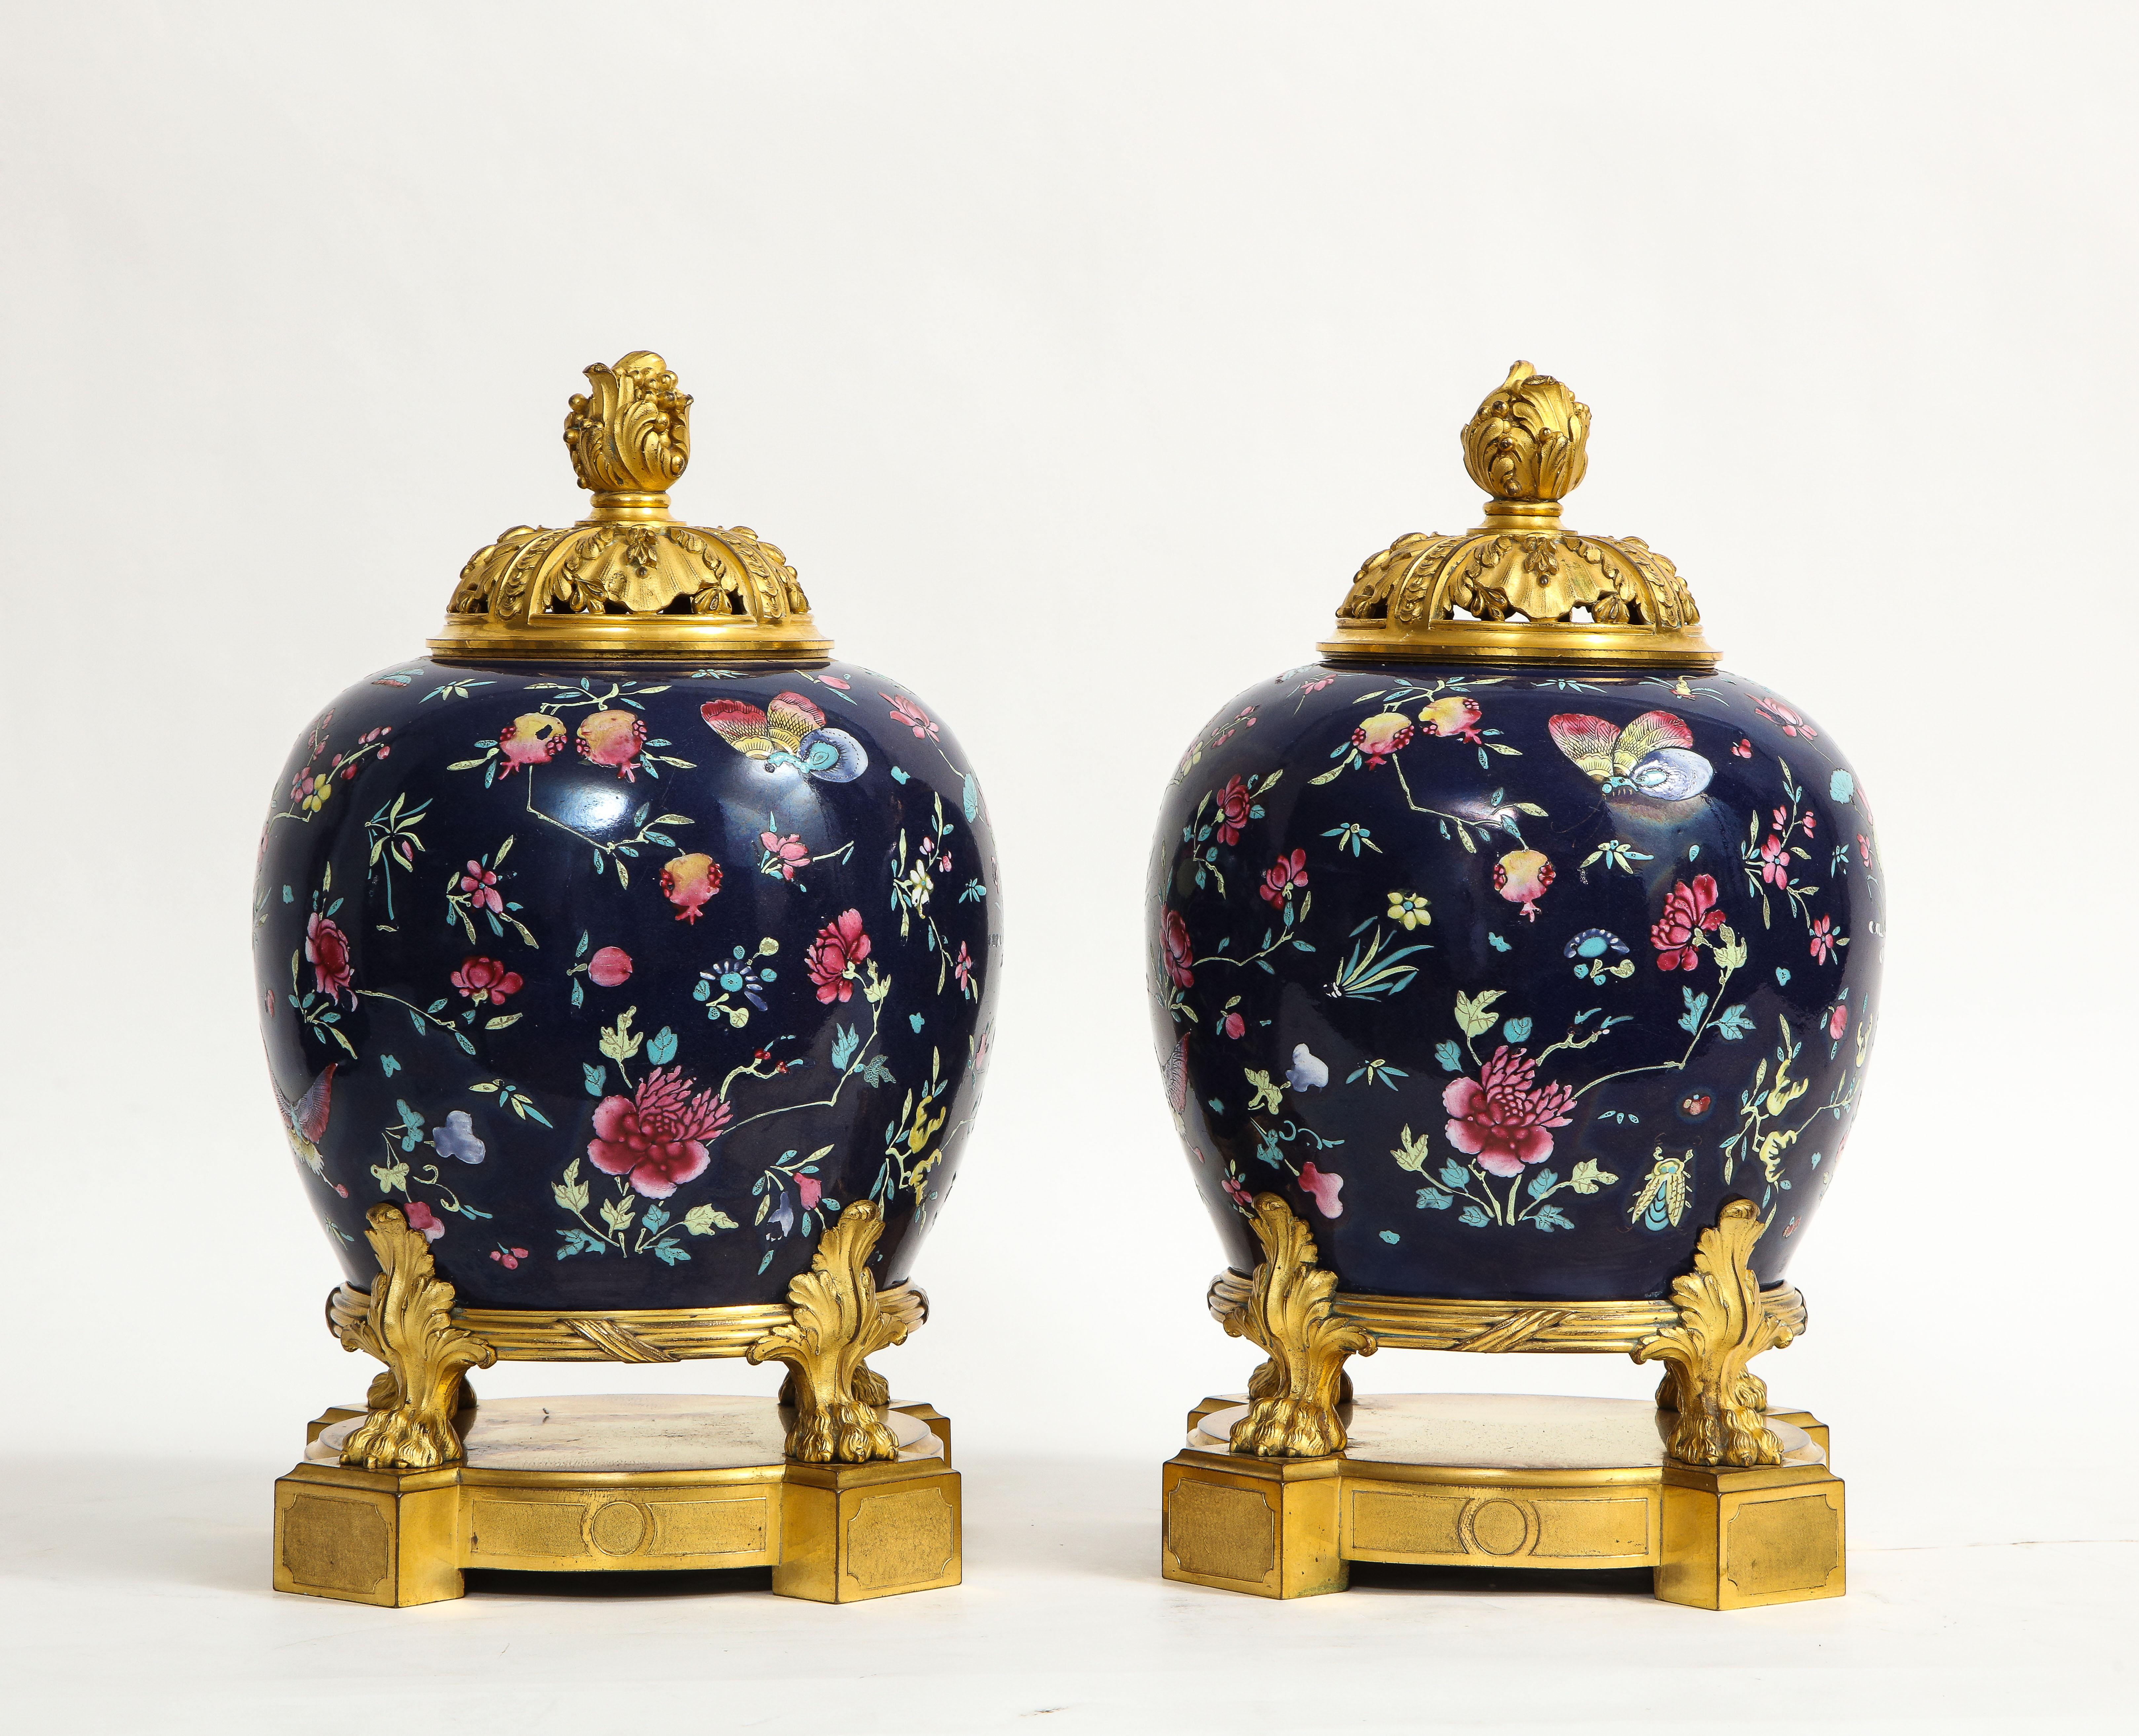 Ein fantastisches Paar von 19. Jahrhundert Französisch Louis XVI-Stil Dore Bronze montiert Chinese Famille Rose Porzellan Potpourris. Jeder dunkelblau grundierte Porzellankörper ist wunderschön von Hand emailliert mit prächtigen Famille-Rose-Motiven